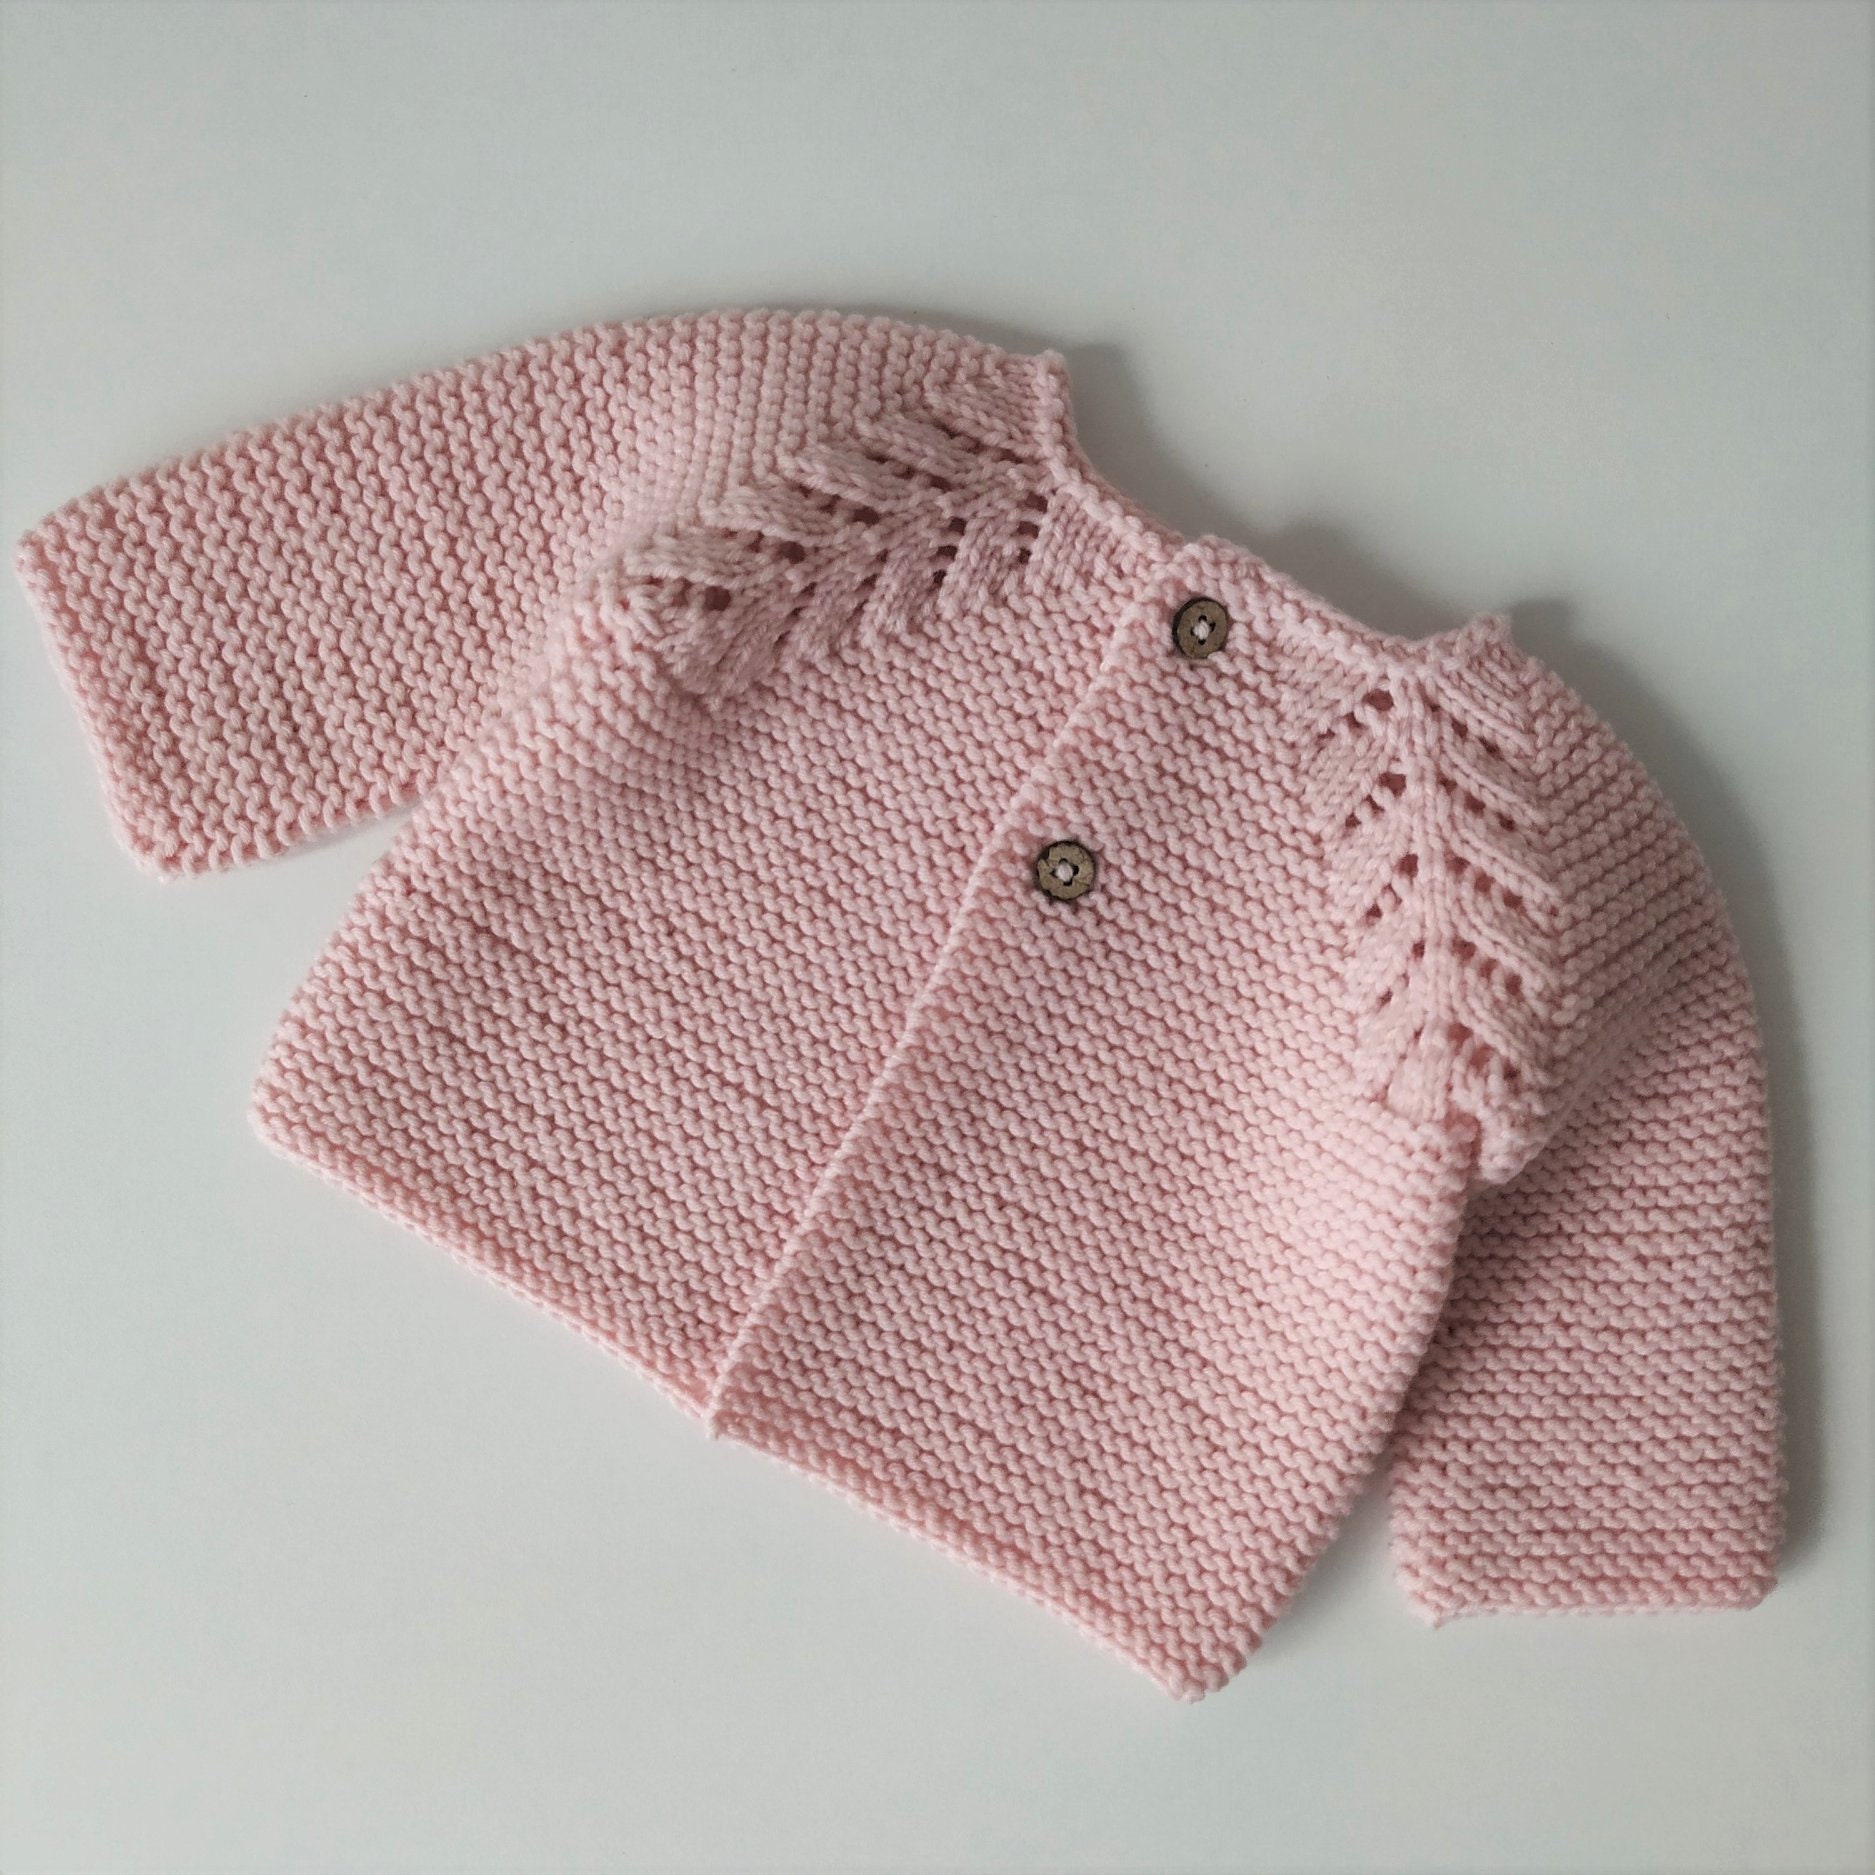 CUSTOM Hand-Knitted Merino Wool Newborn Baby Girl or Boy | Etsy